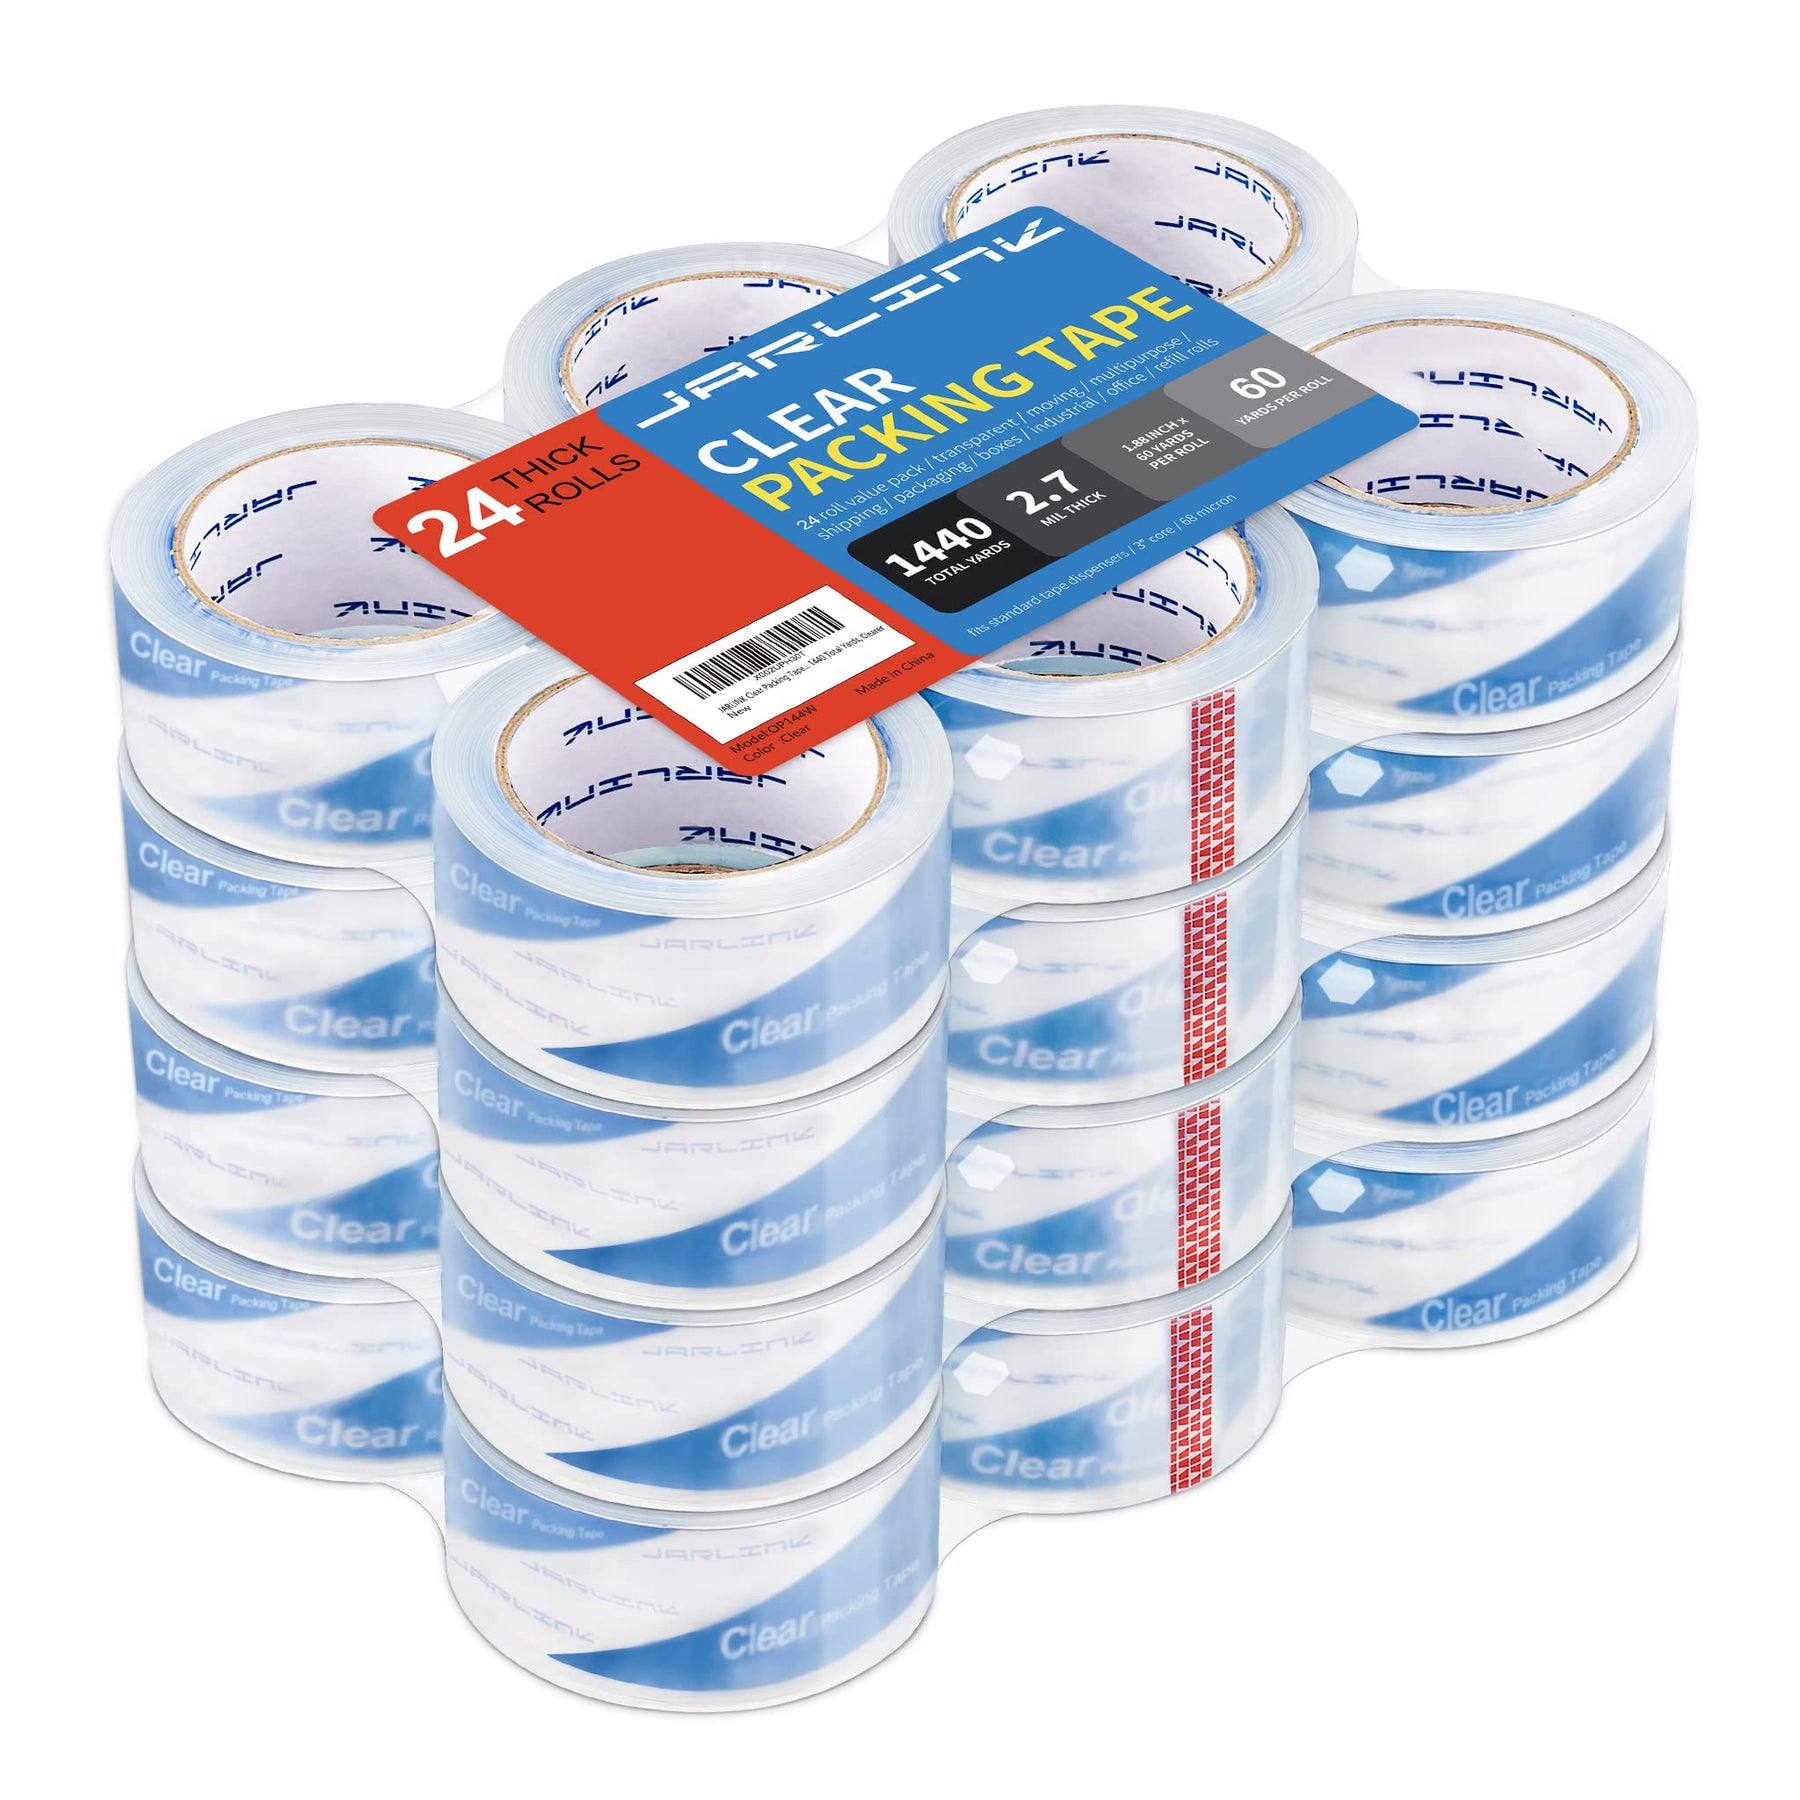 Shop Shipping Tape Refills, Sealing Tape